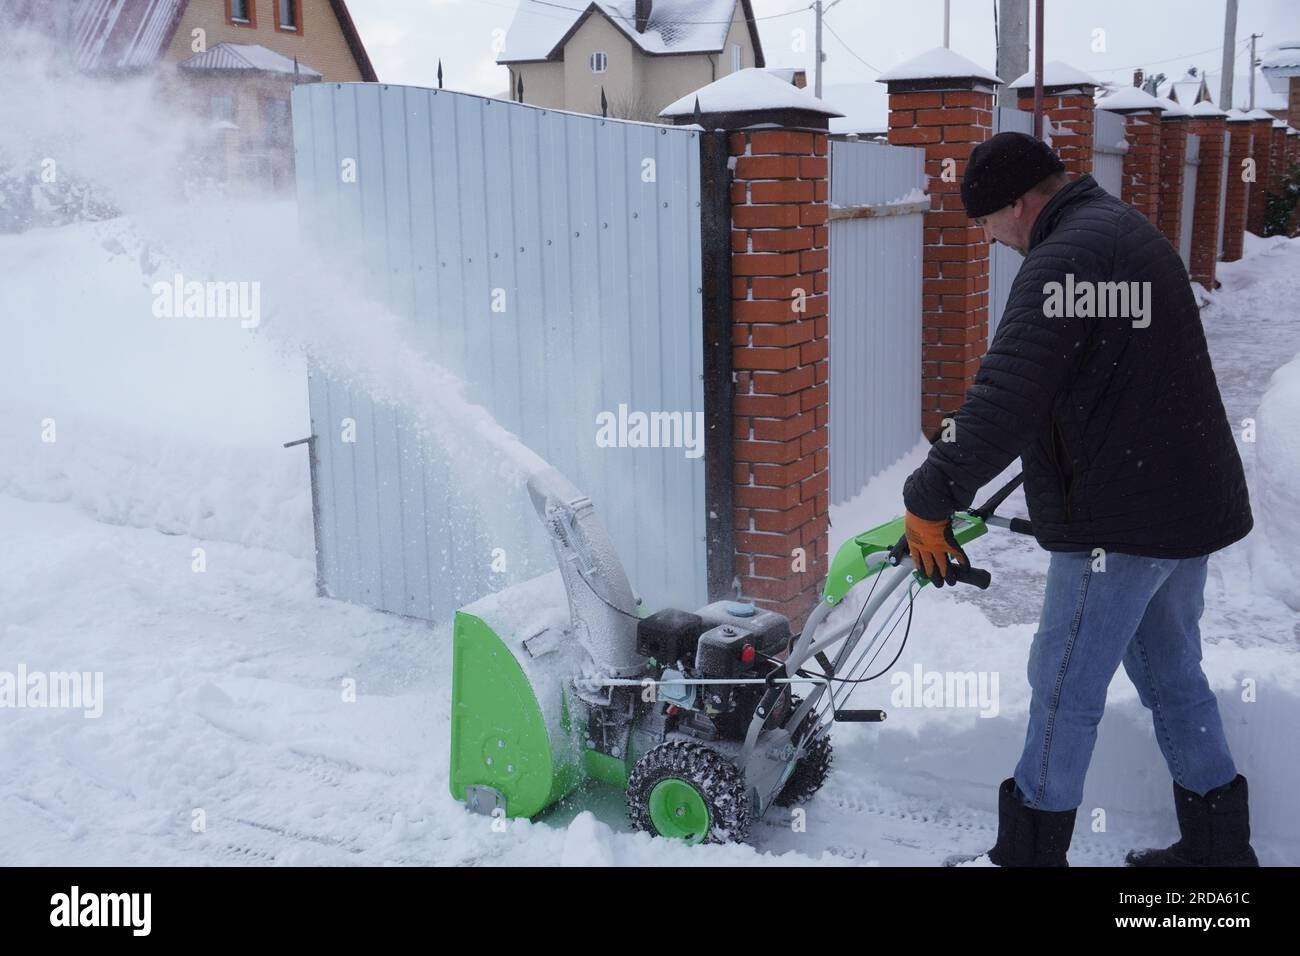 Ein Mann reinigt Schnee im Winter im Hof des Hauses, ein Mann reinigt  Schnee mit einer Schneefräse Stockfotografie - Alamy